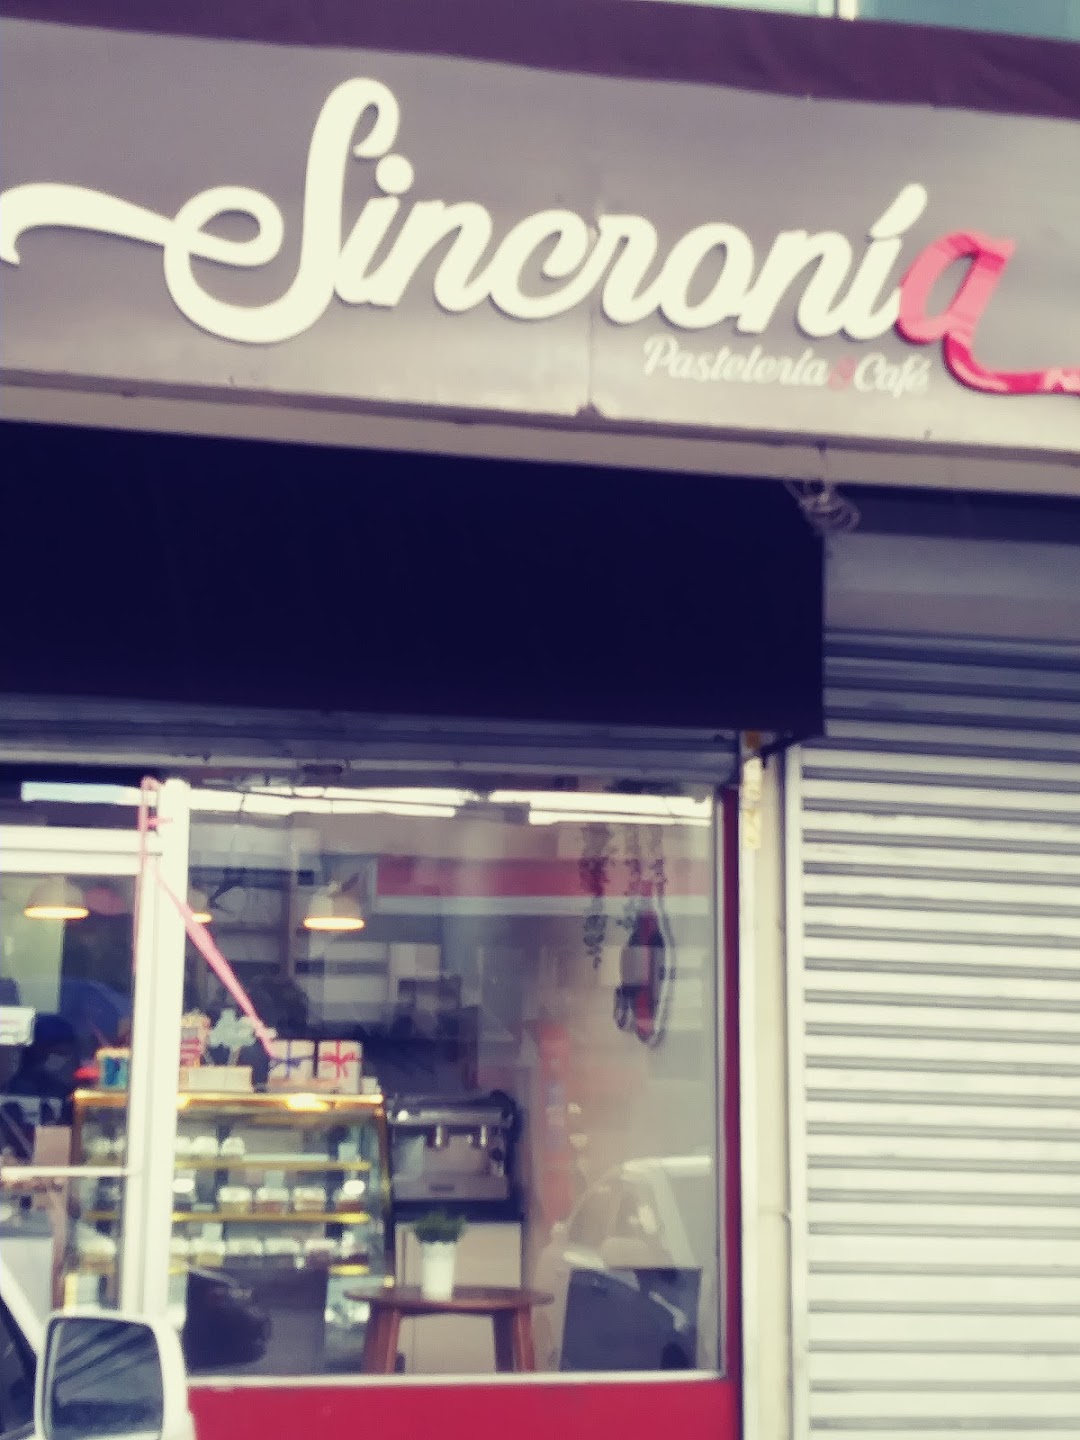 Sincronía Pastelería & Café